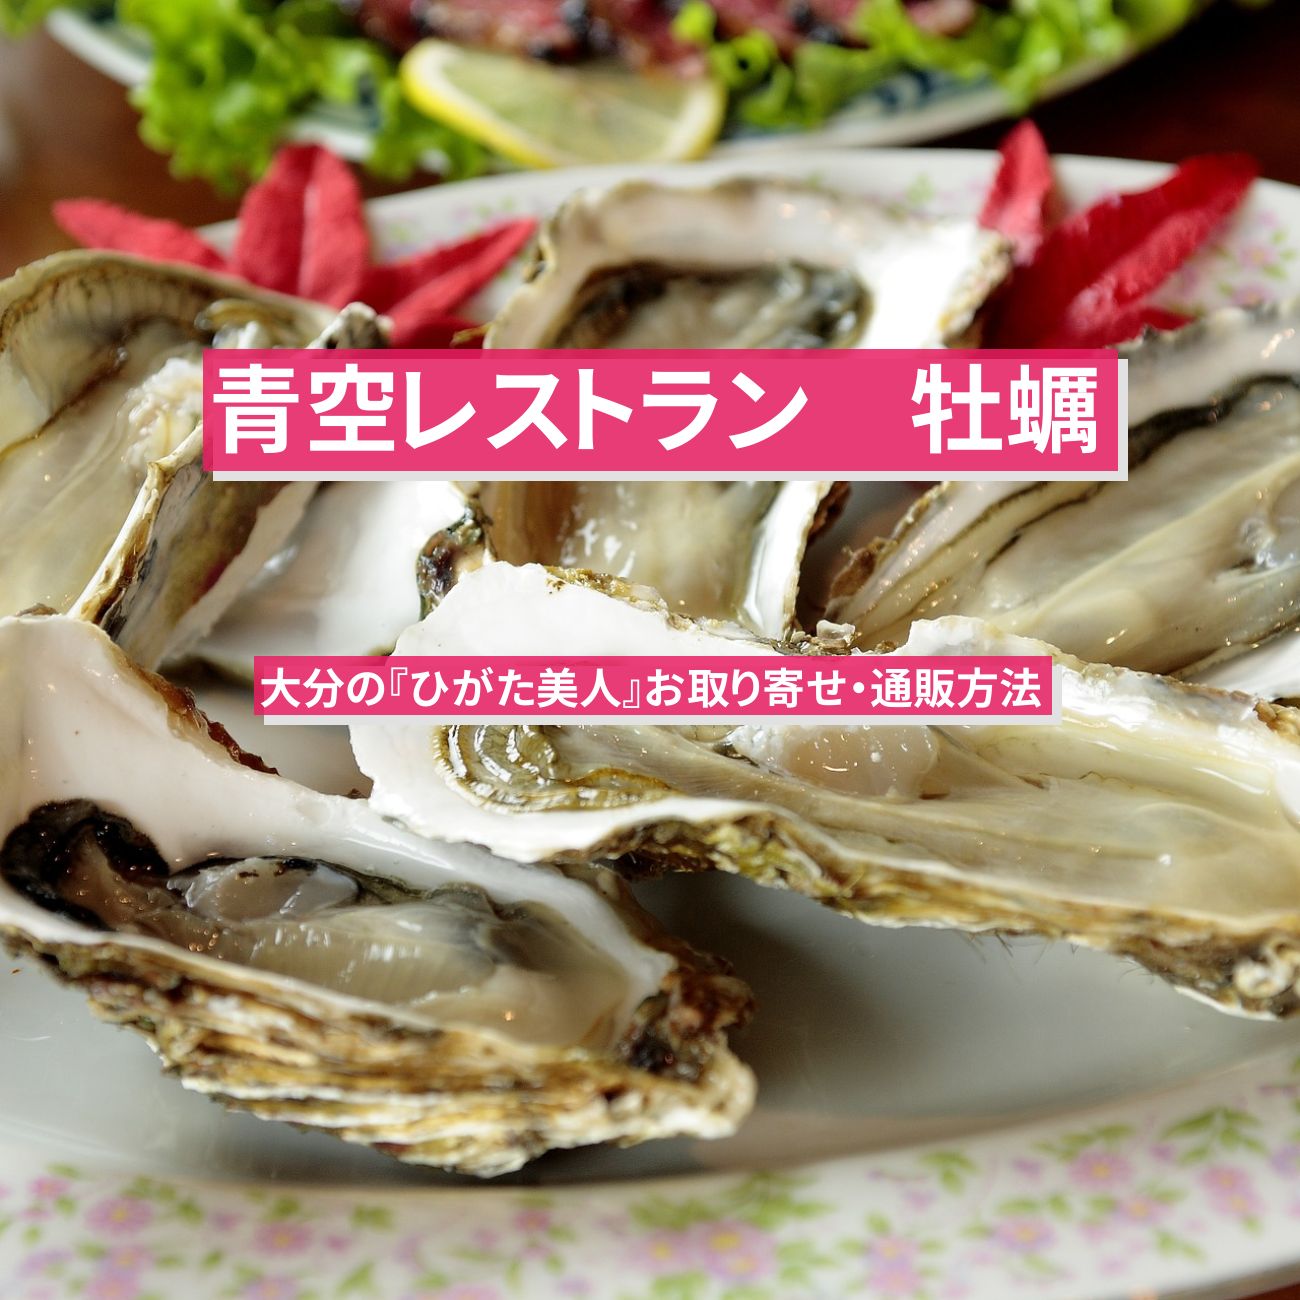 【青空レストラン】牡蠣『ひがた美人』大分のお取り寄せ・通販方法